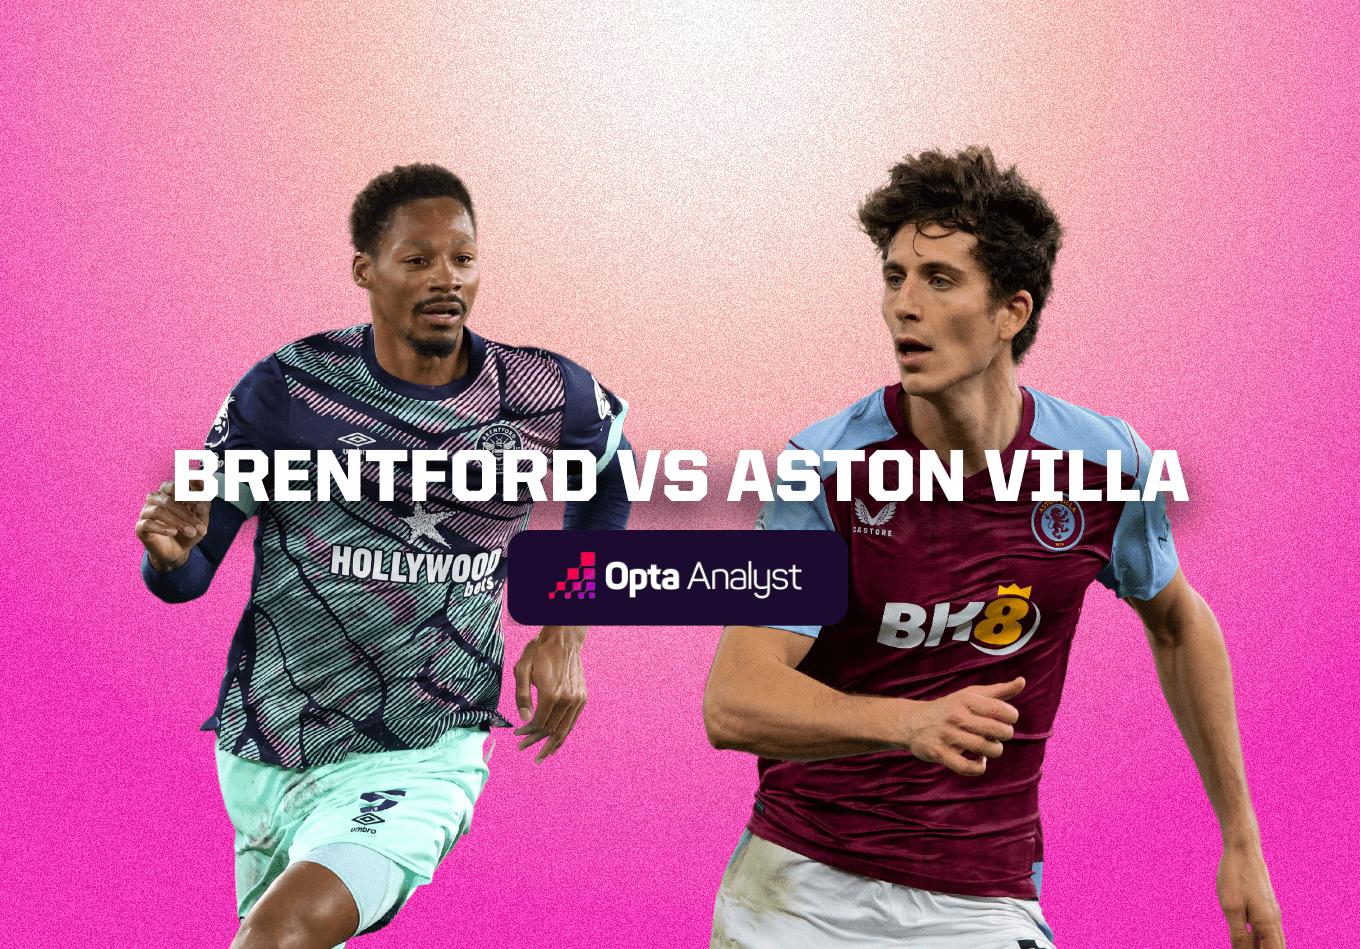 Brentford vs Aston Villa: Prediction and Preview